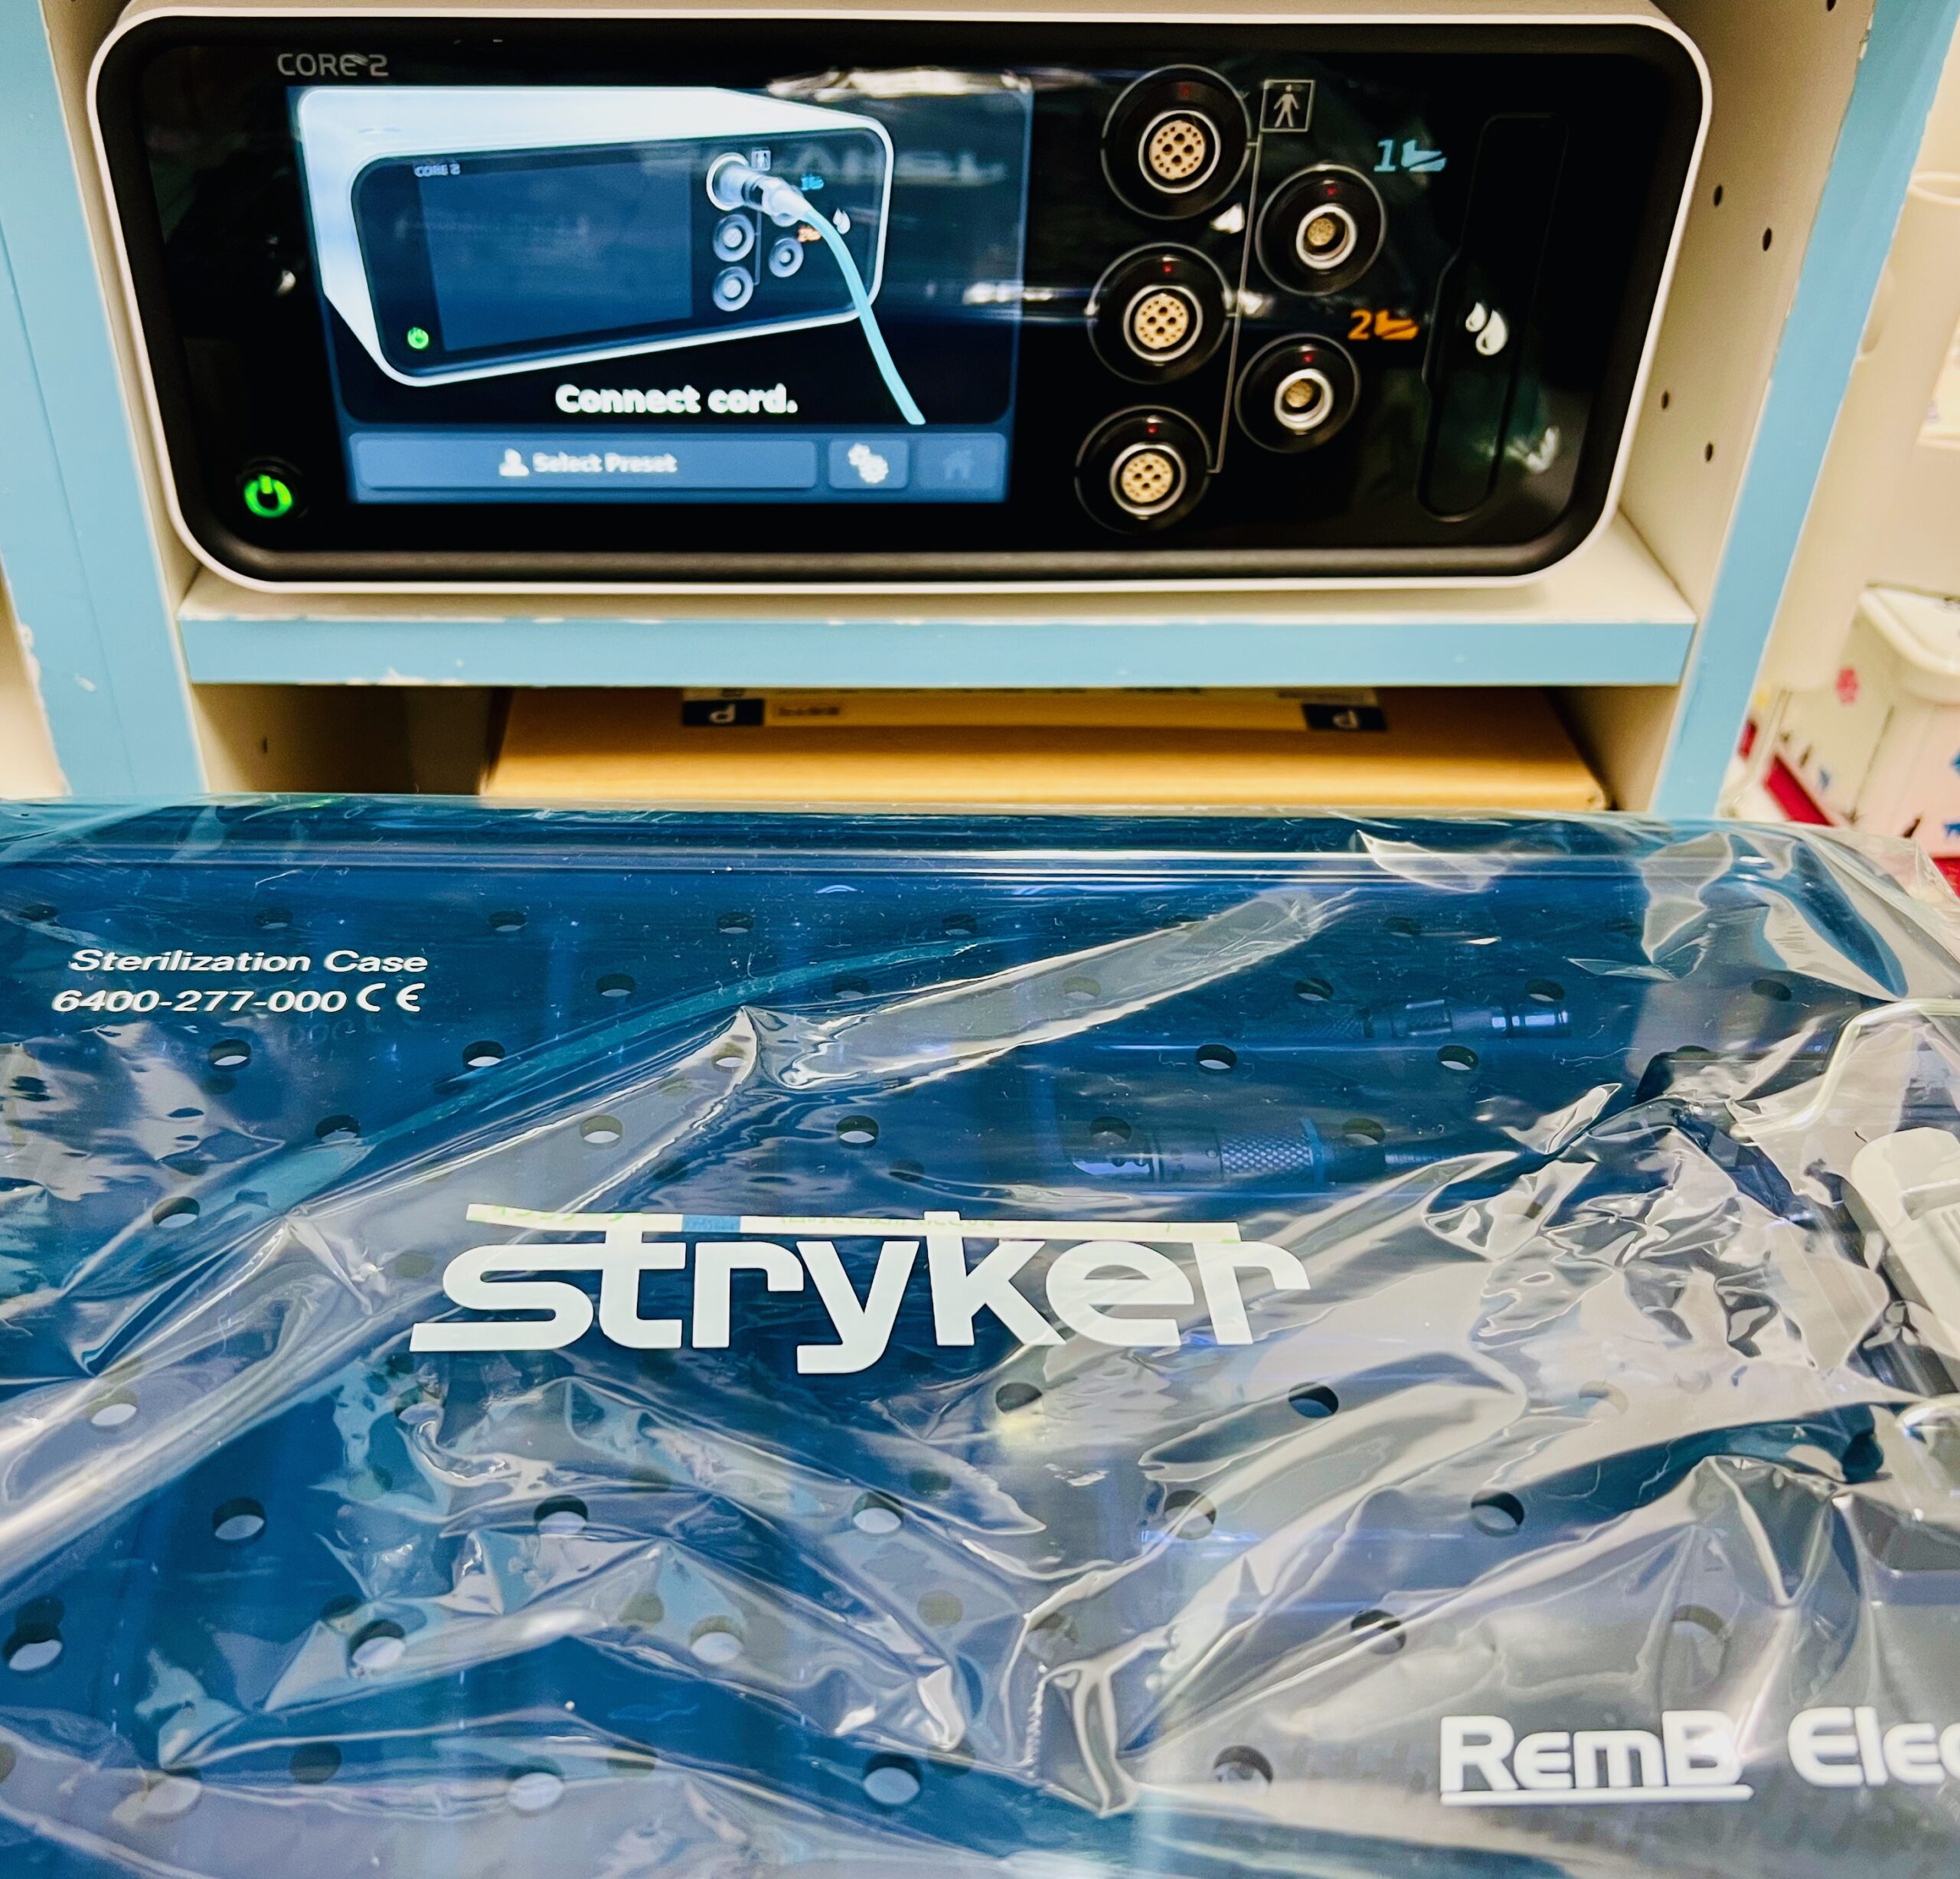 横浜 金沢区の動物病院 マーサ動物病院 医療設備 Stryker cor2 電動マイクロドリルシステム